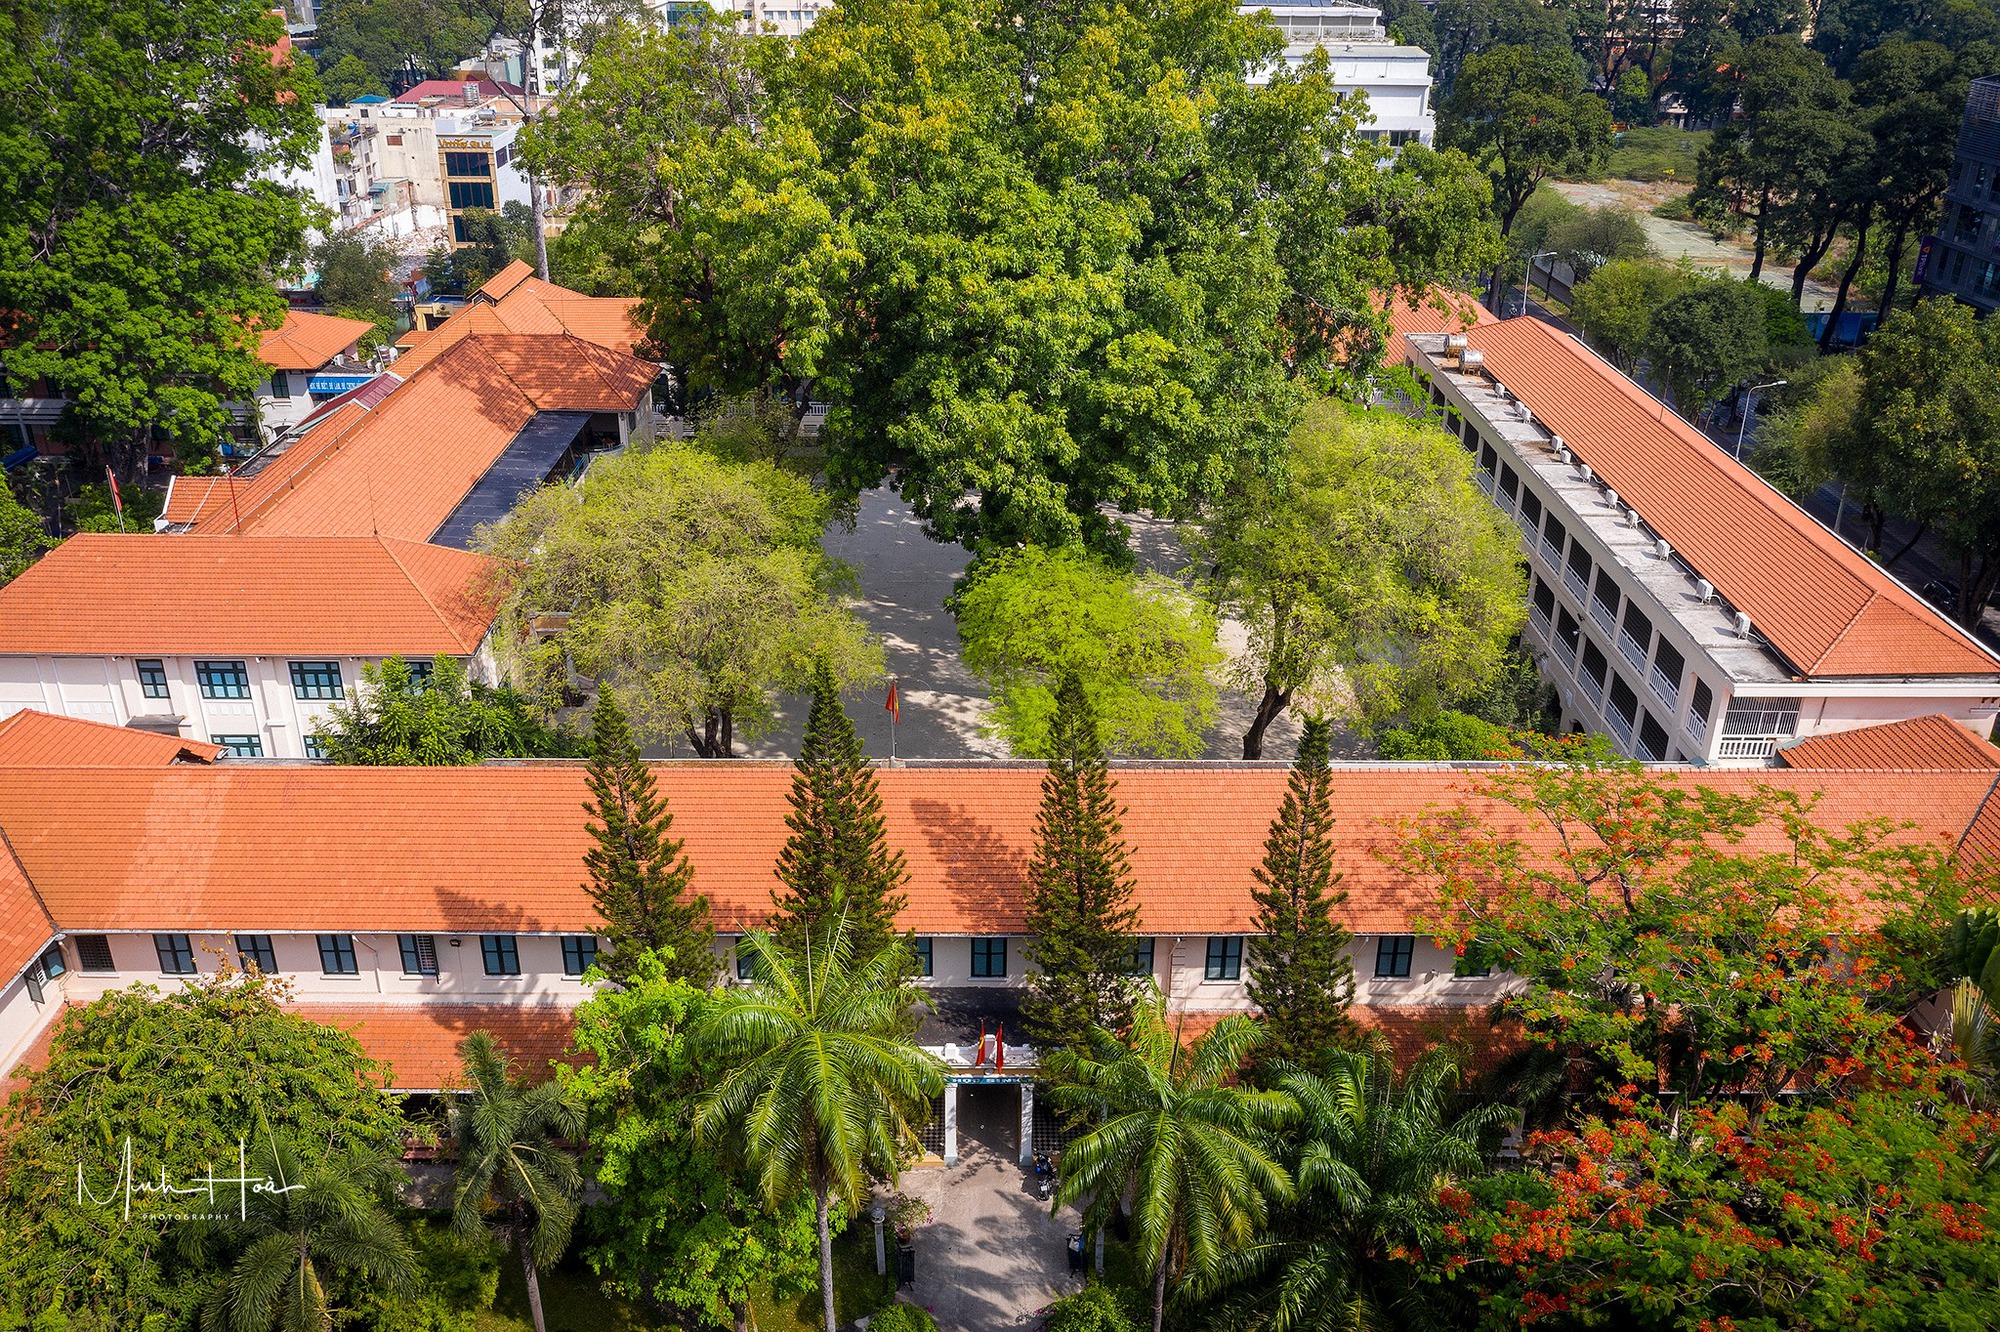  Cận cảnh trường trung học cổ nhất TP. HCM, nơi Quốc vương Campuchia từng học - Ảnh 4.